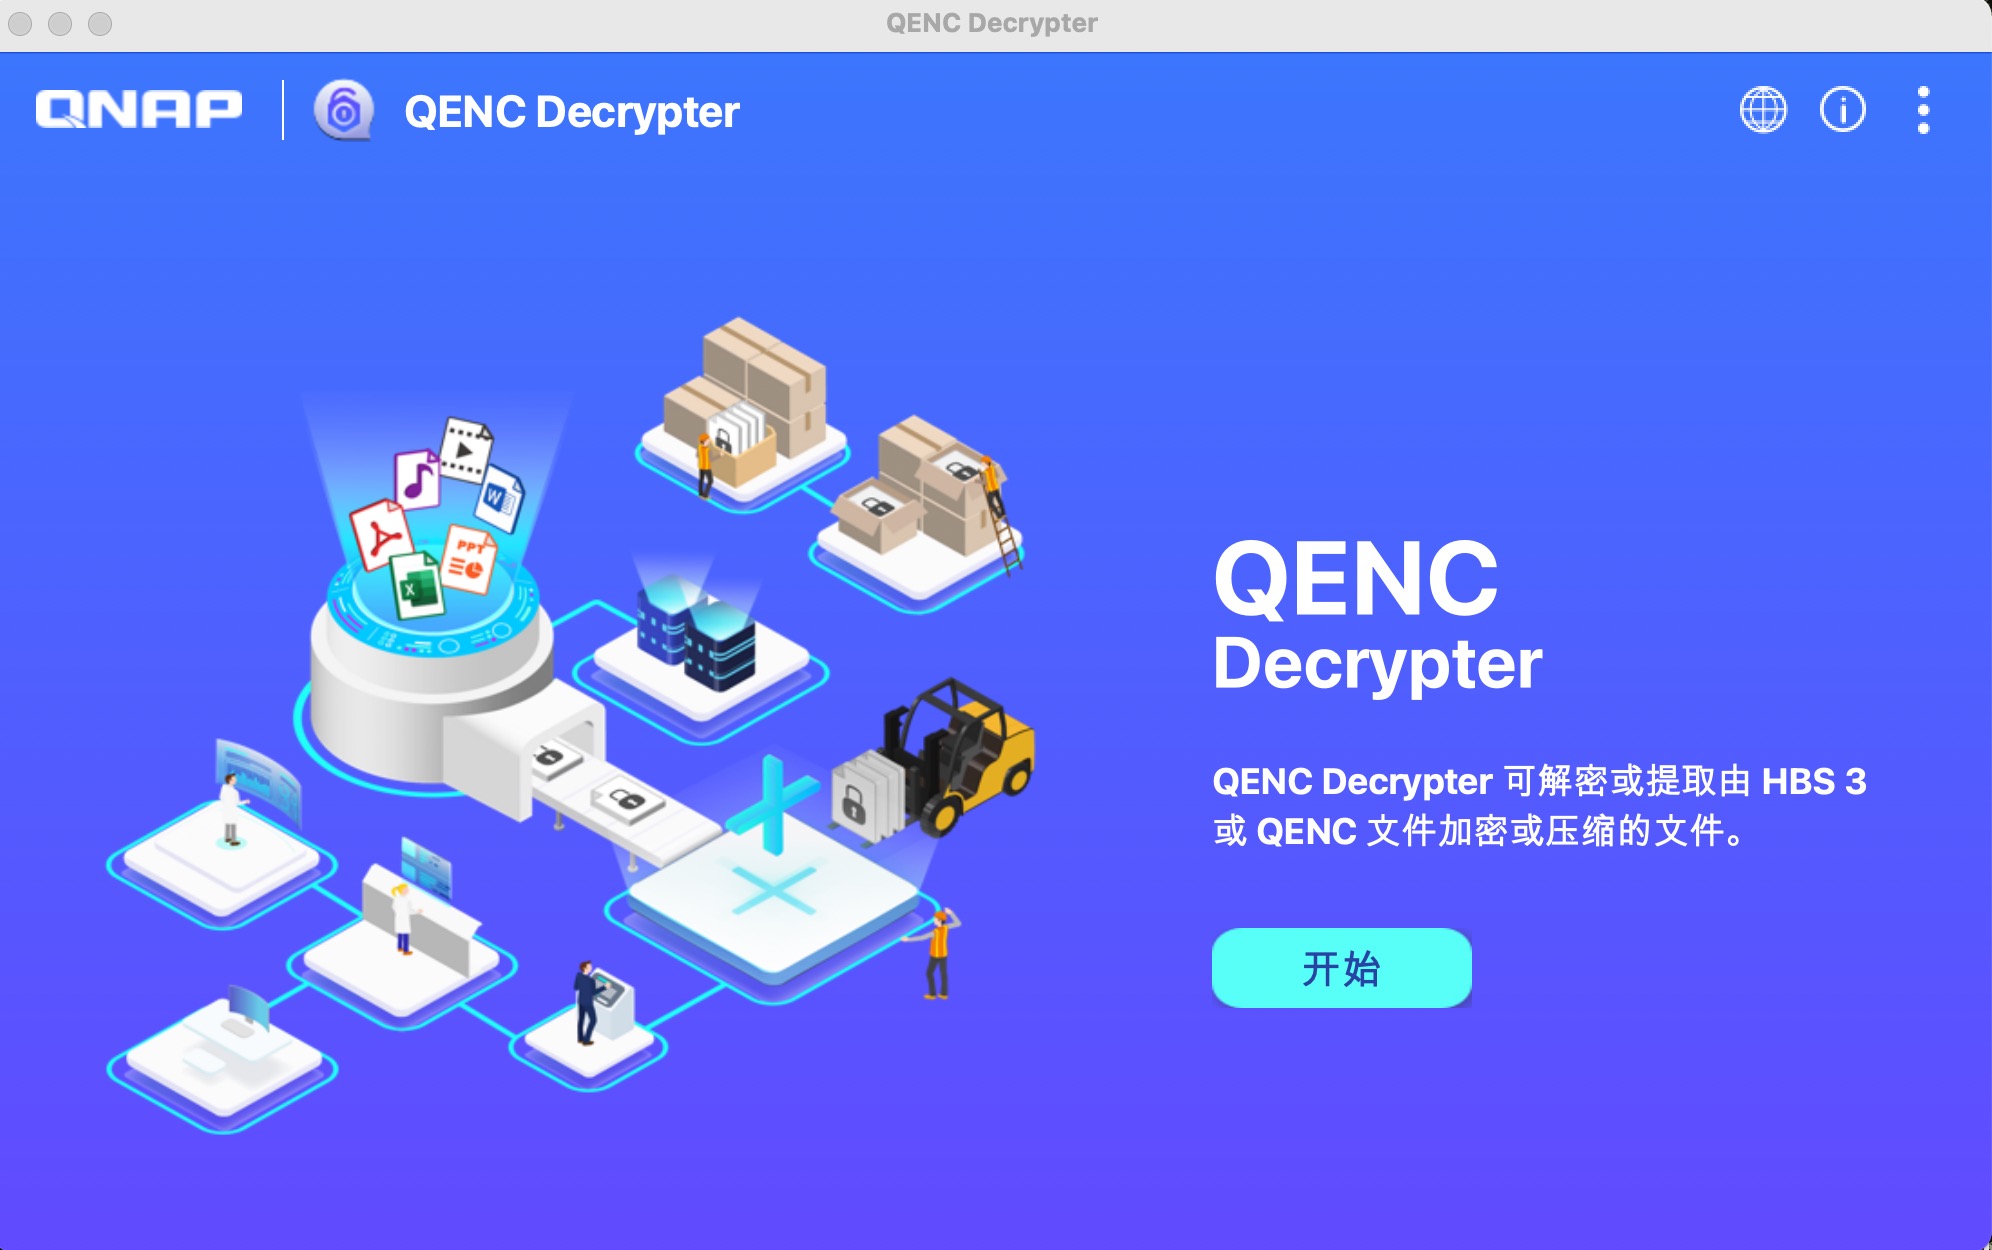 QENC Decrypter